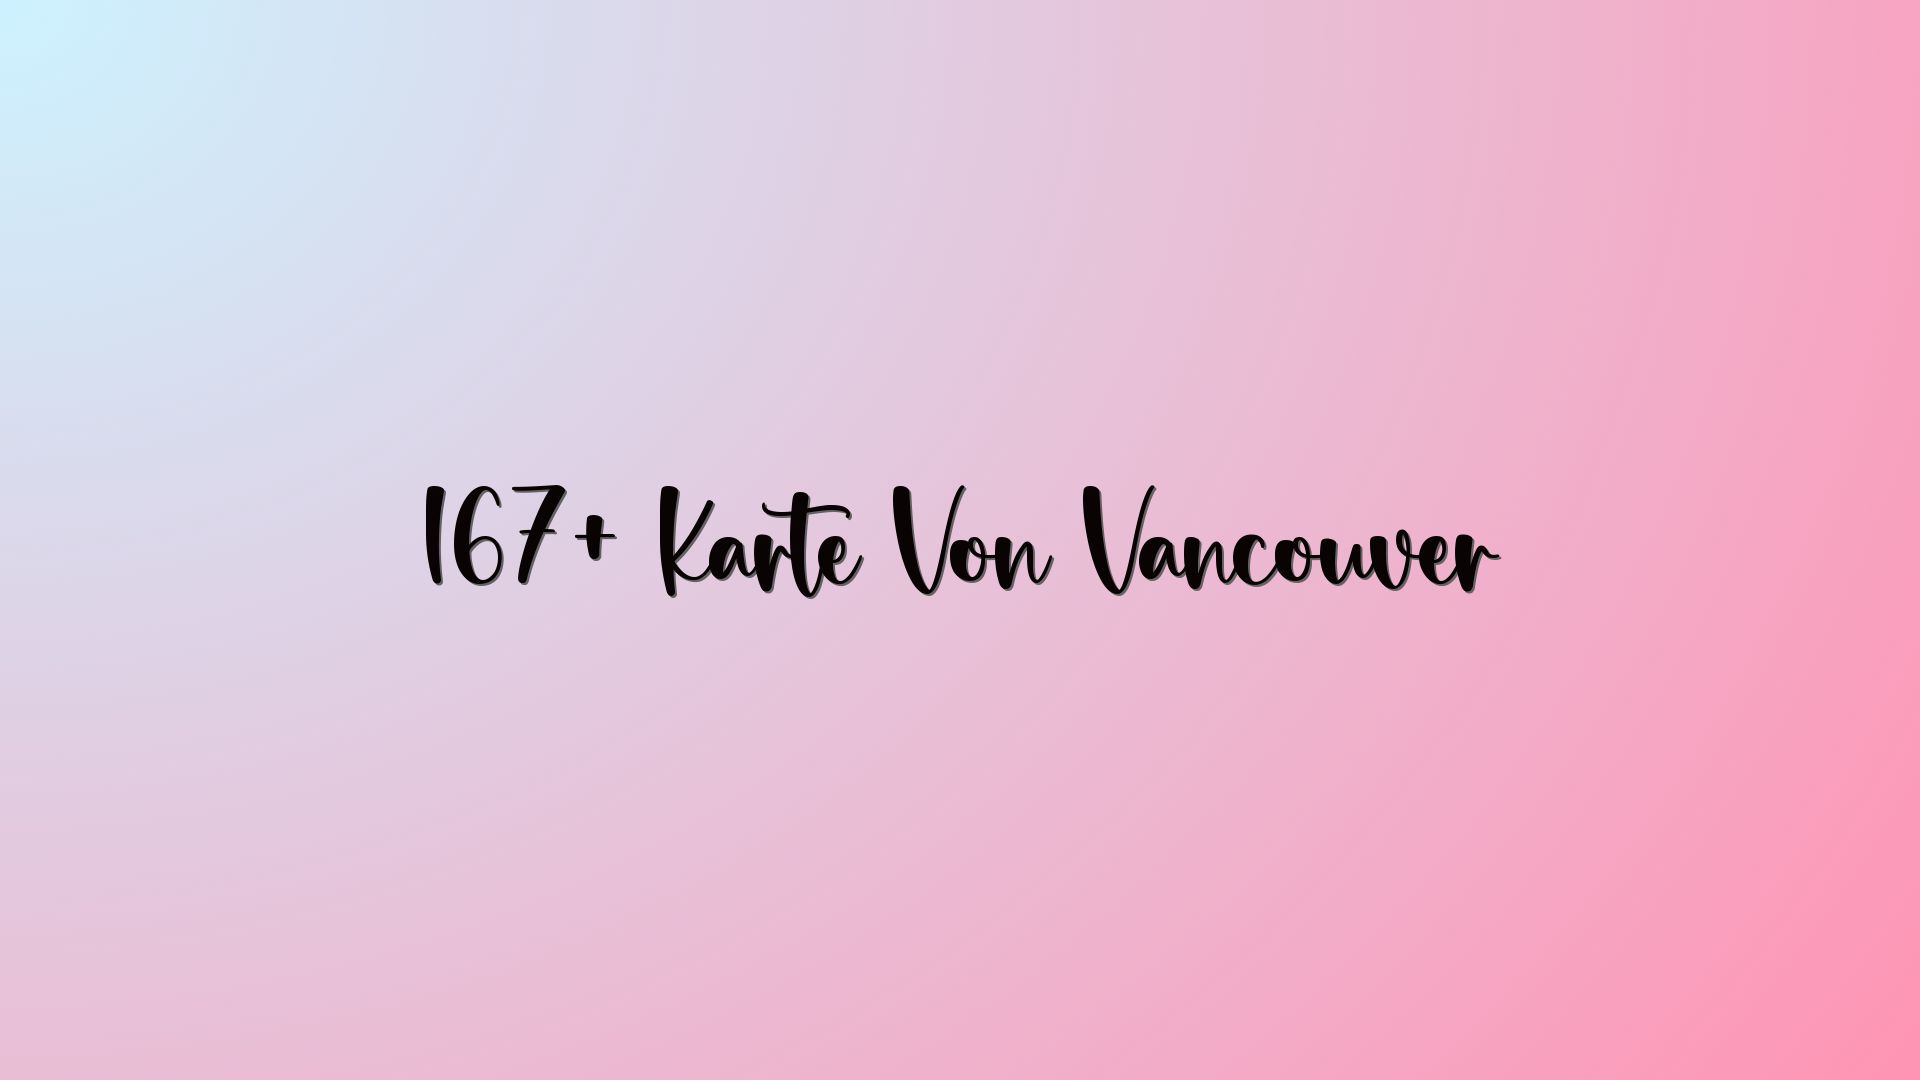 167+ Karte Von Vancouver